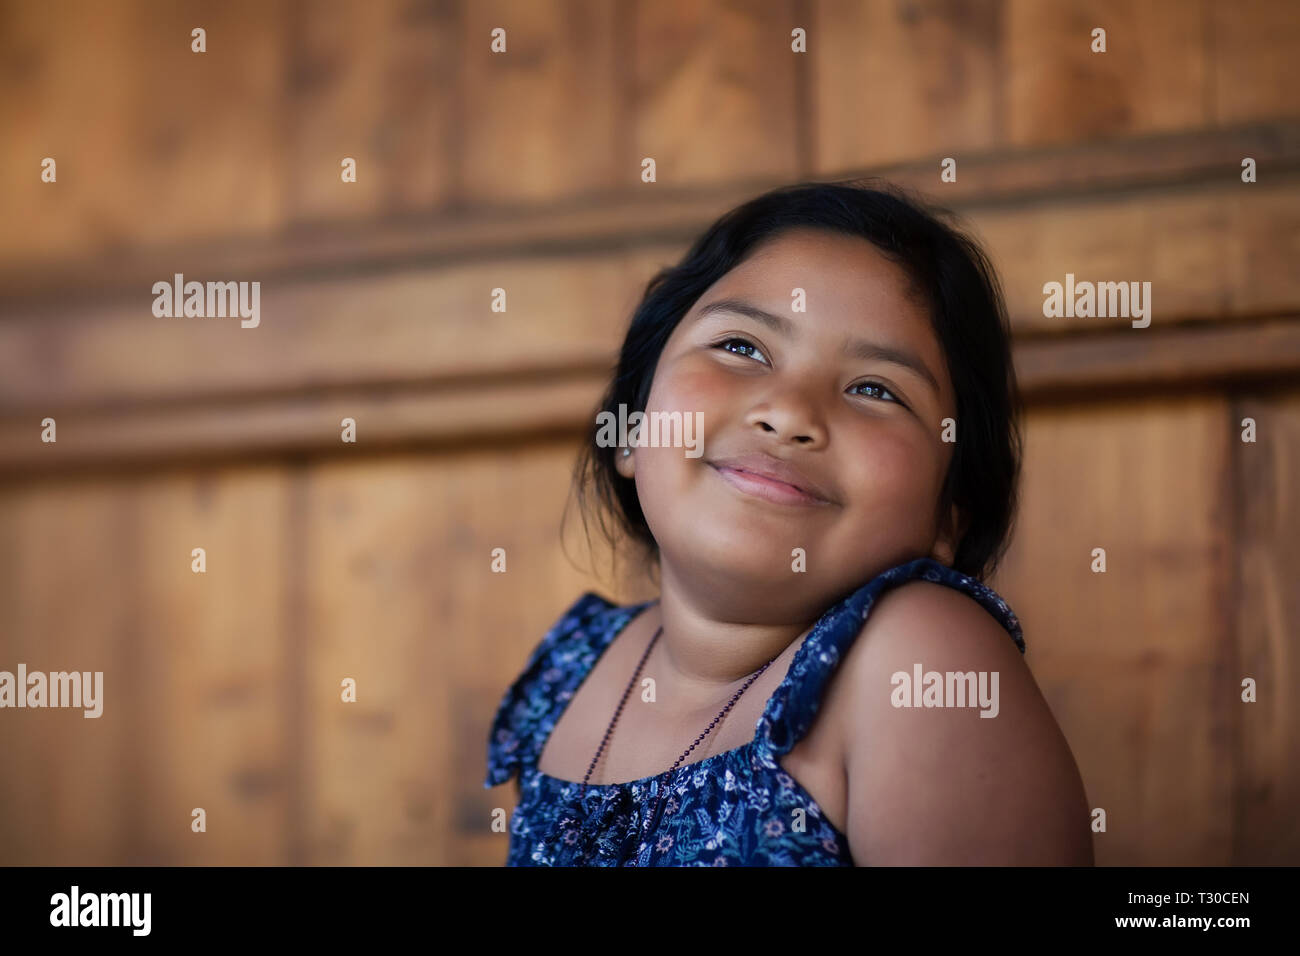 Junge ethnische Mädchen erinnern an einen glücklichen Moment in ihrem Verstand und mit dem Ausdruck der Freude über ein Lächeln und leuchtenden Augen. Stockfoto